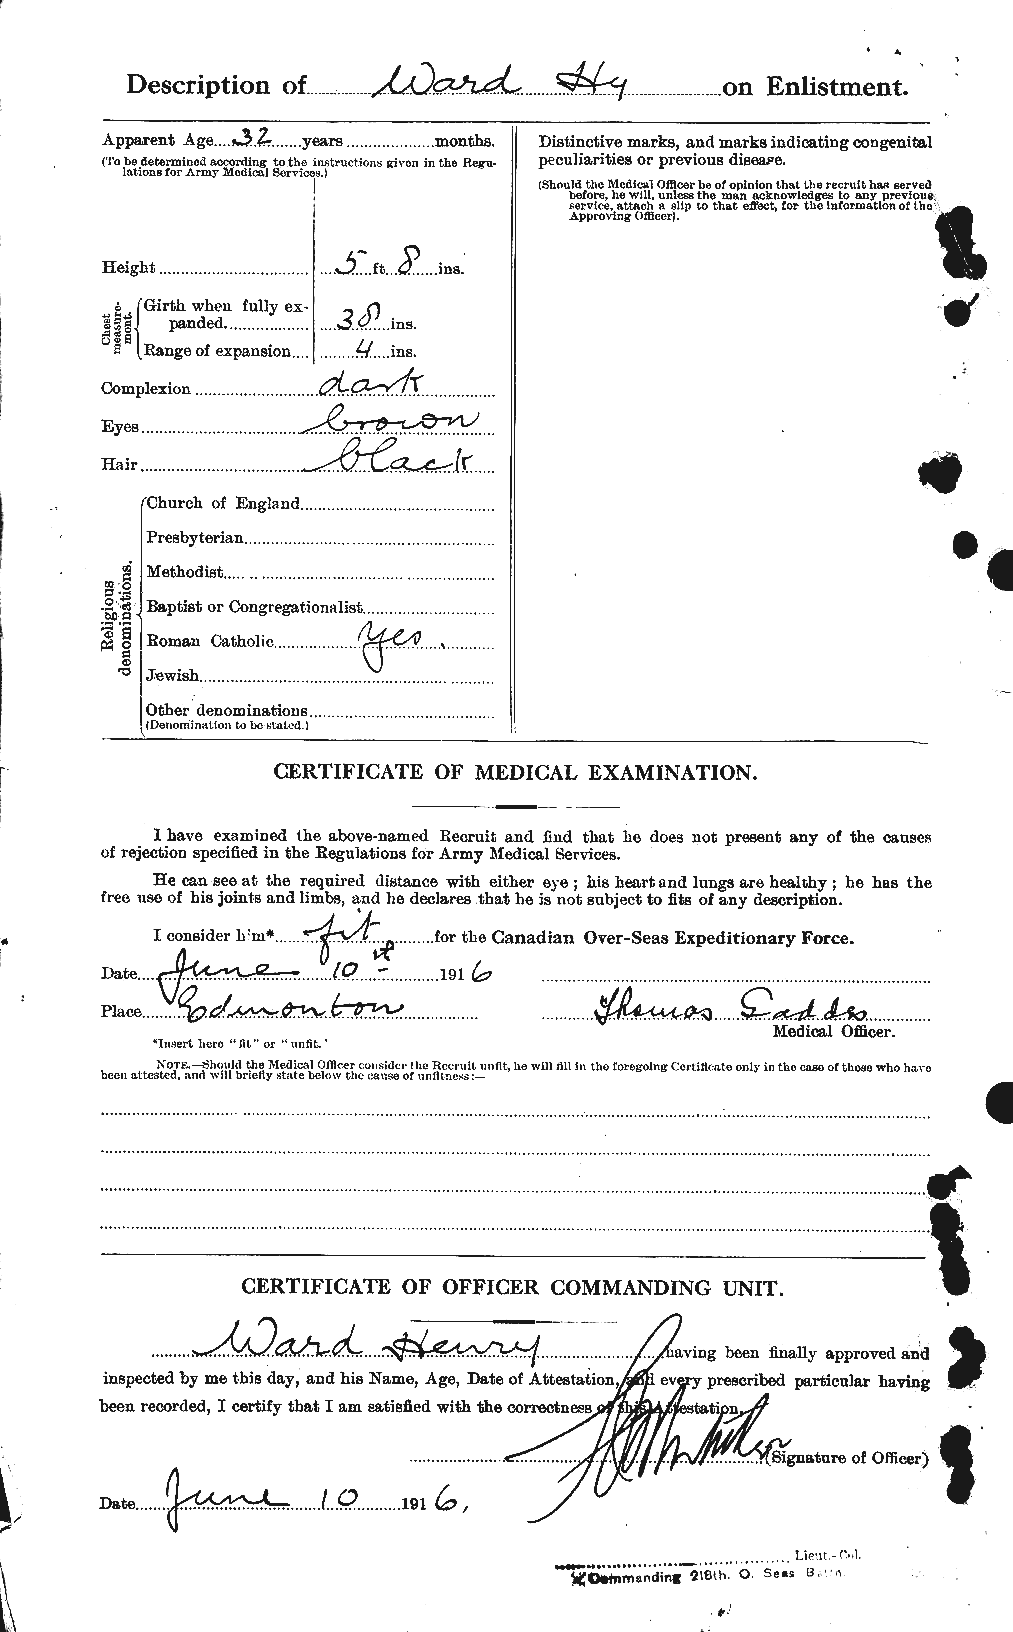 Dossiers du Personnel de la Première Guerre mondiale - CEC 657822b